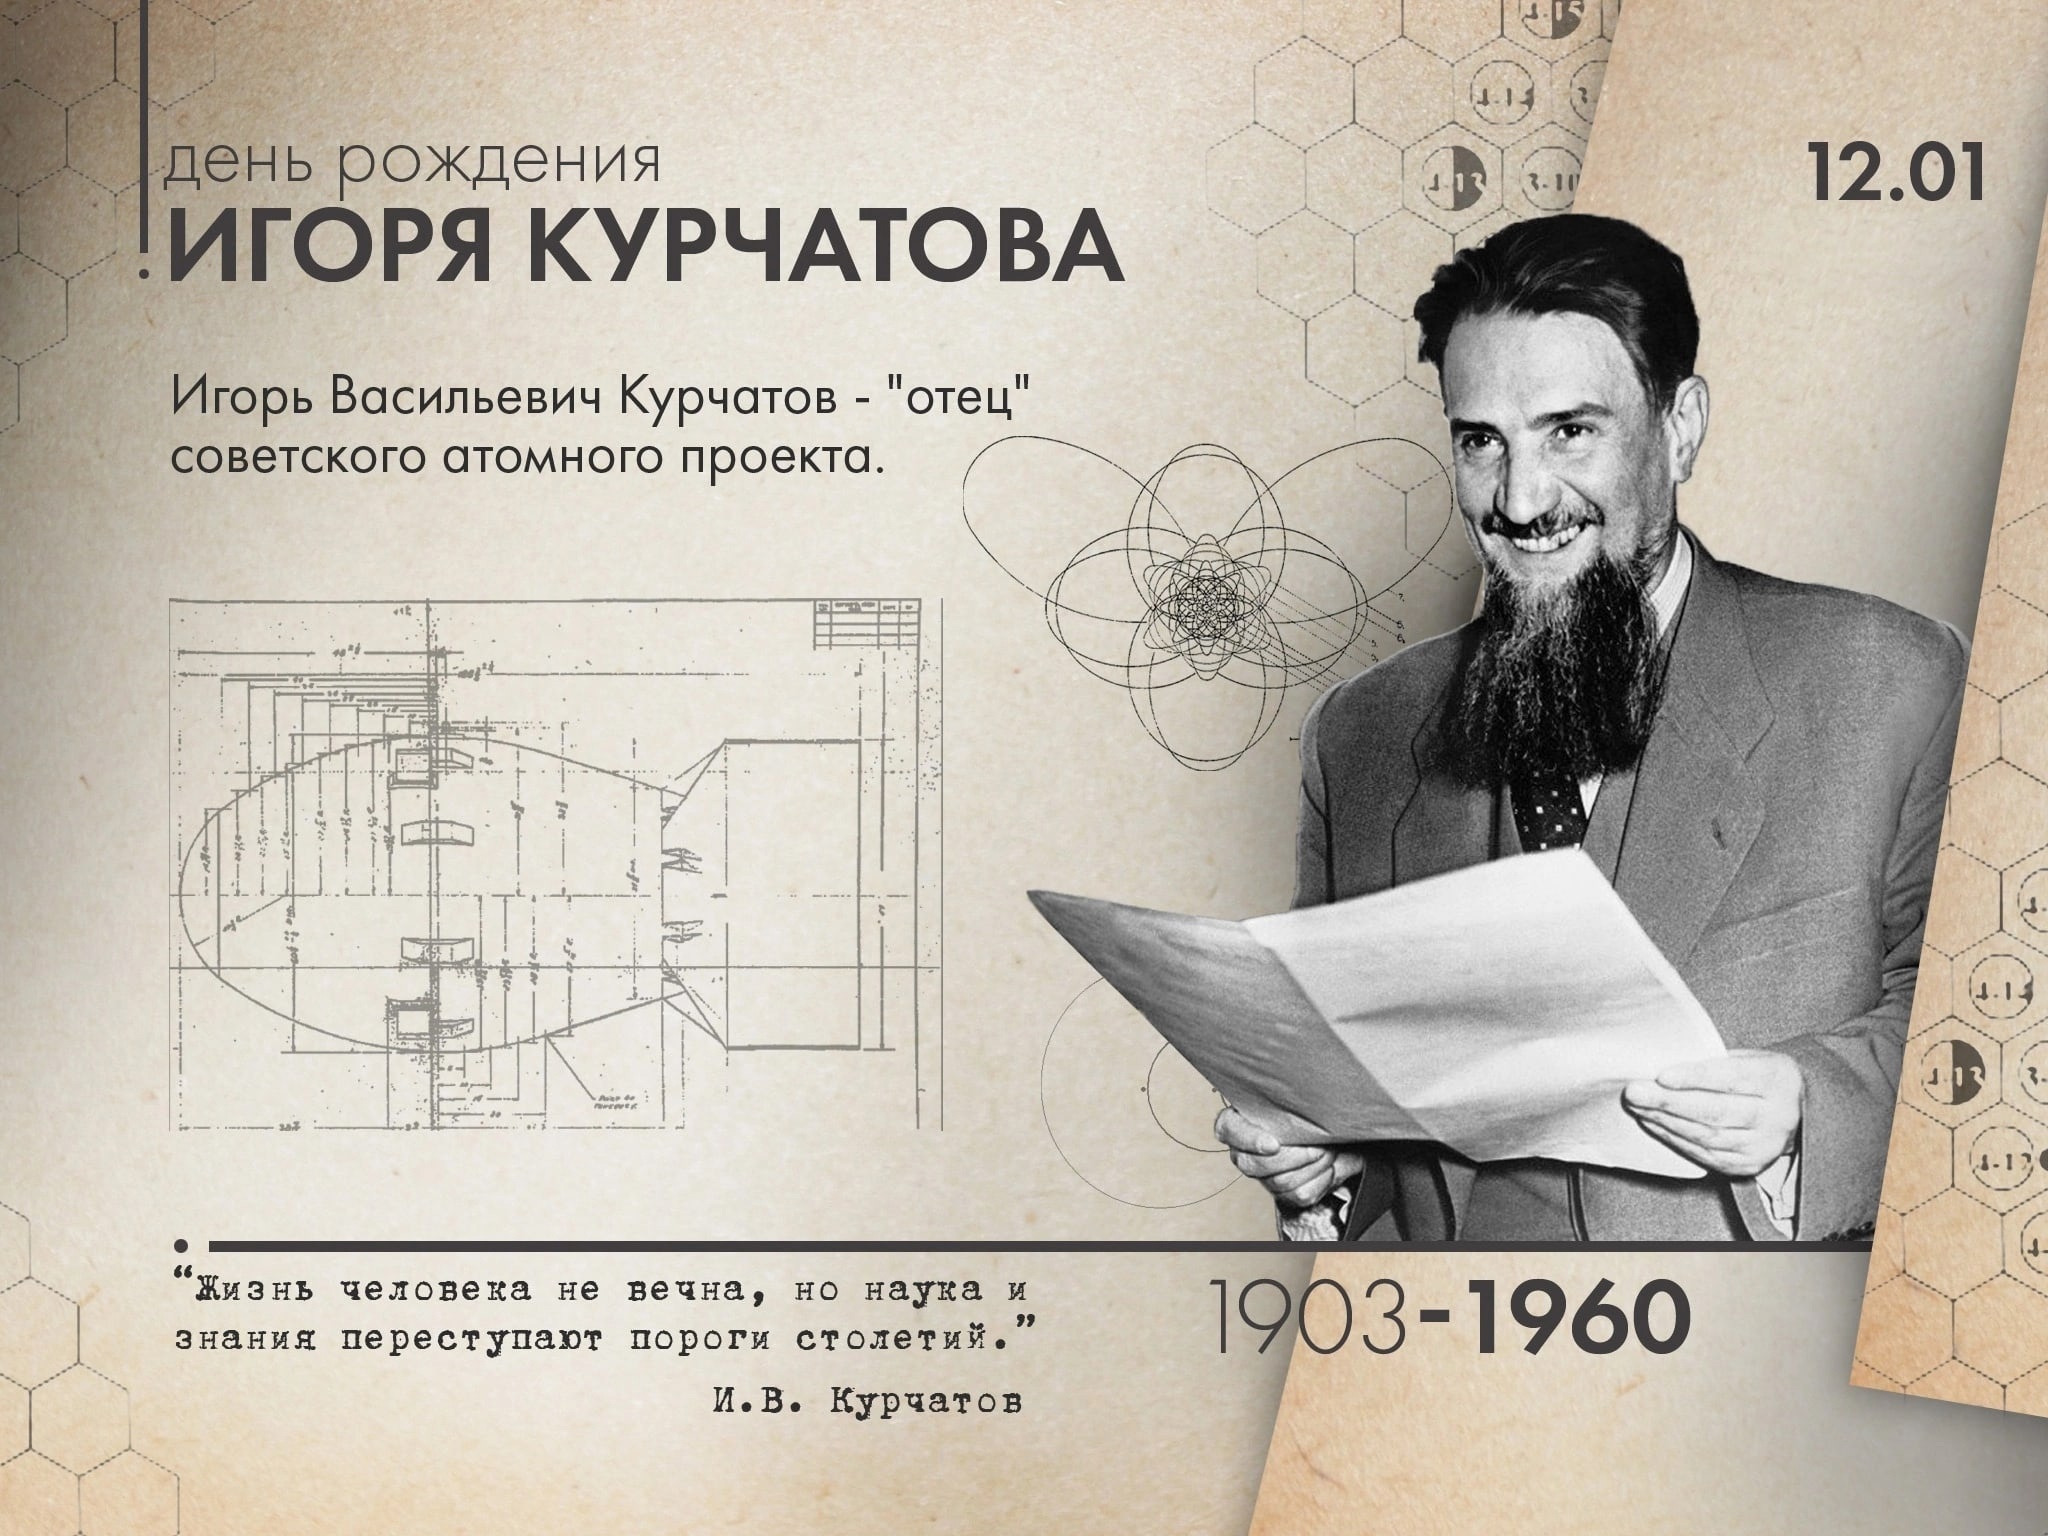 Муниципальный этап региональной питч-сессии технологических проектов, посвященной 120-летию со дня рождения И.В. Курчатова.